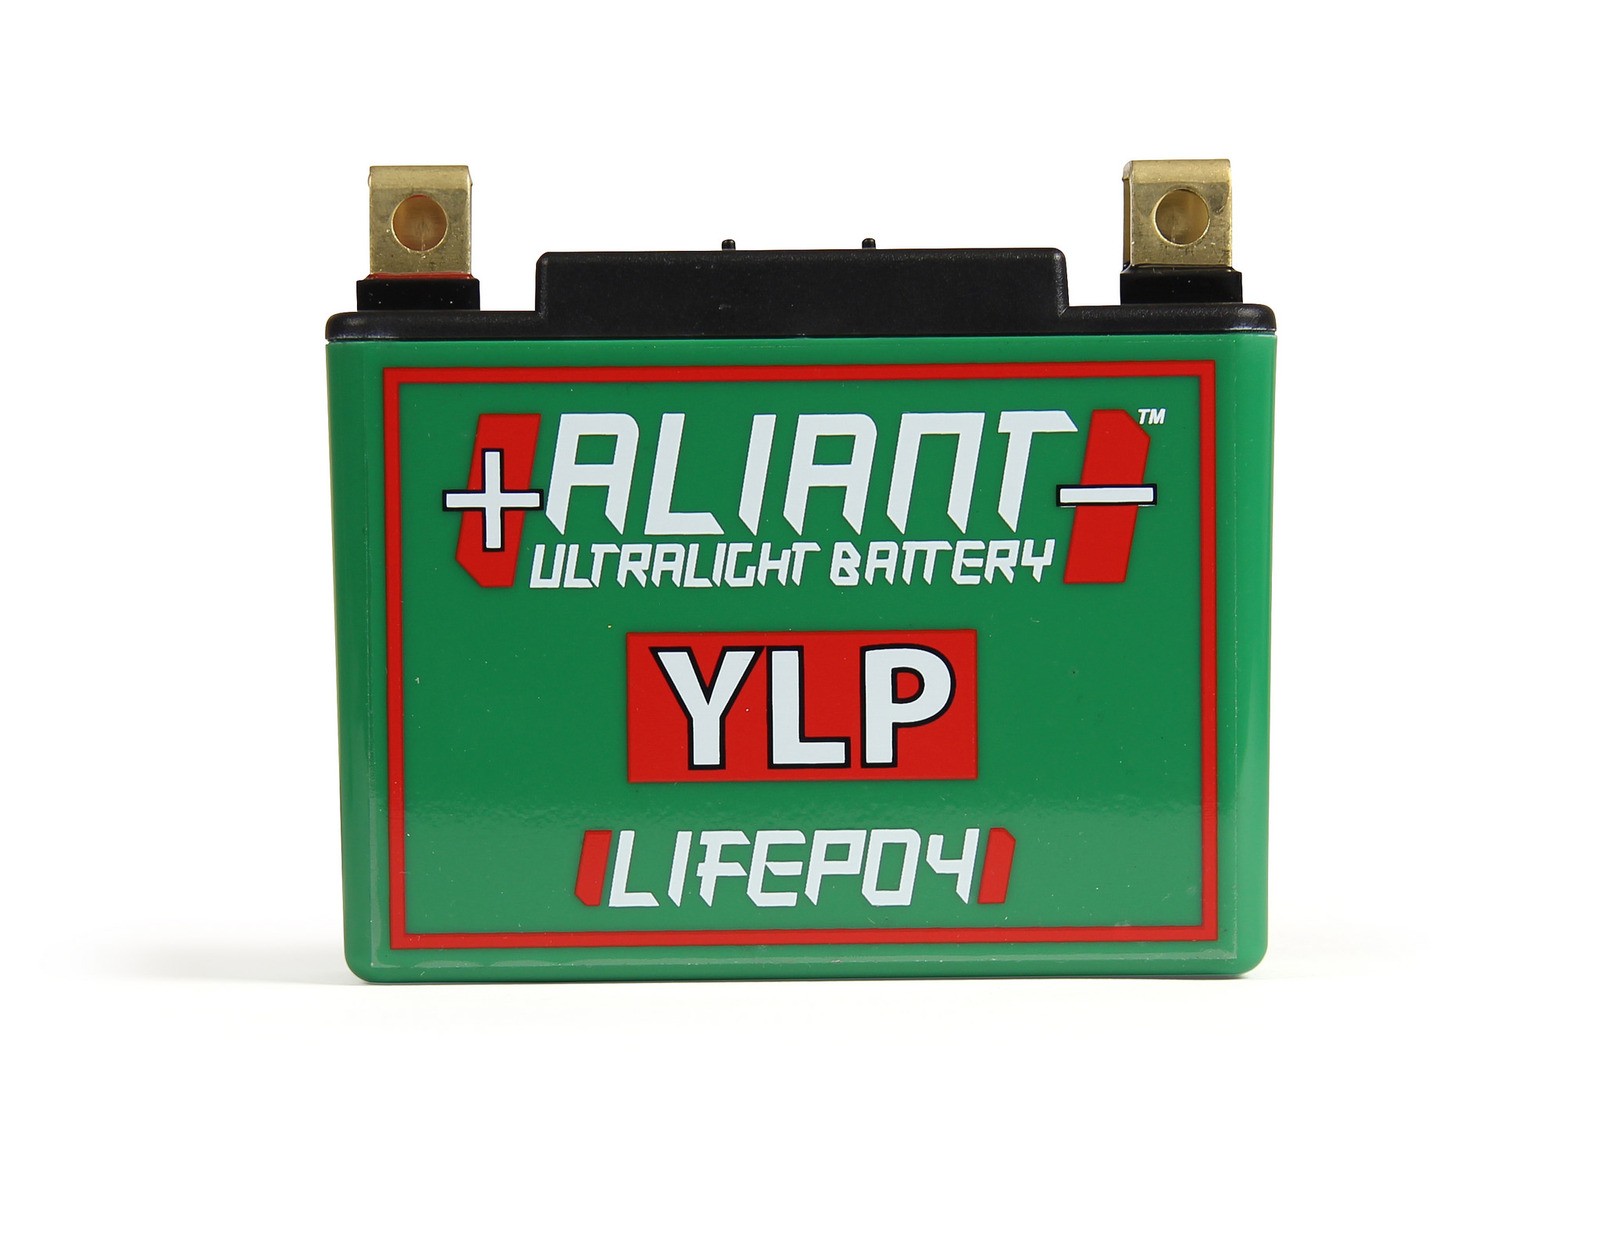 Aliant YLP10 10.0 AH ALICHEM Lifepo4 Battery